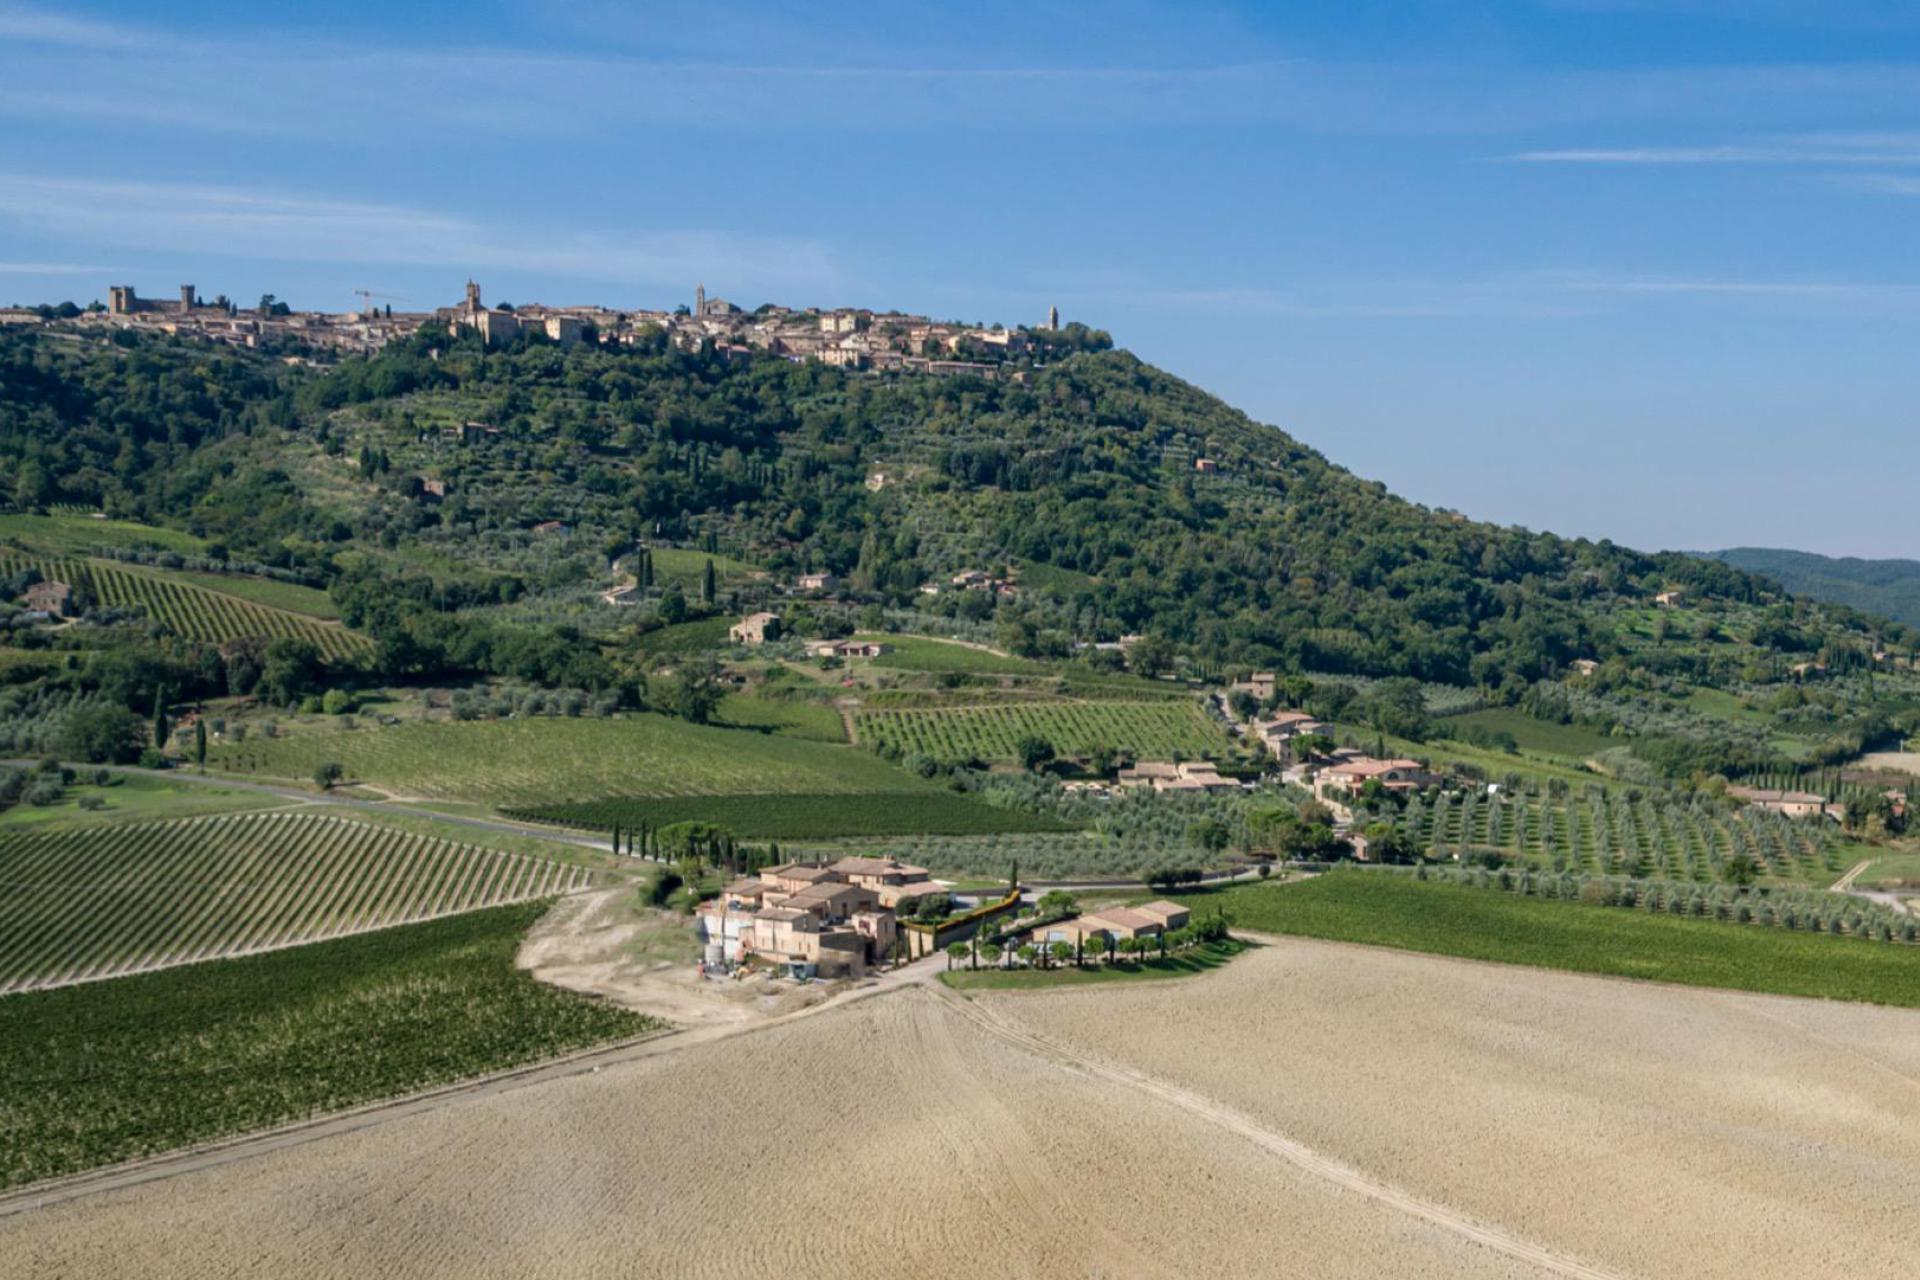 Luxe wijnboerderij op slechts 2 km van Montalcino